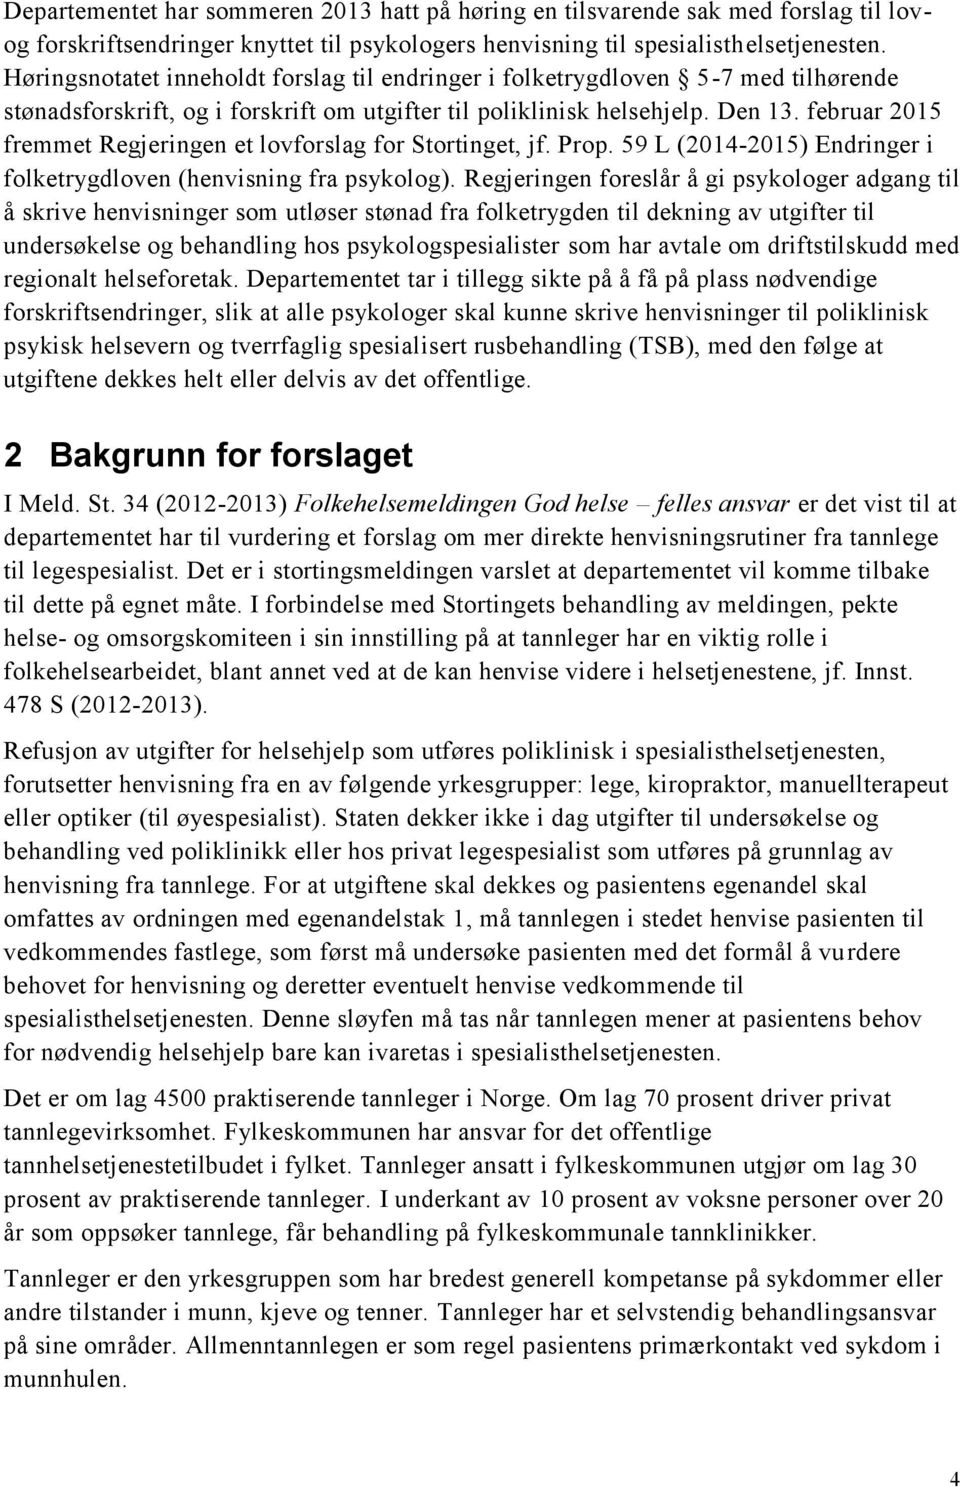 februar 2015 fremmet Regjeringen et lovforslag for Stortinget, jf. Prop. 59 L (2014-2015) Endringer i folketrygdloven (henvisning fra psykolog).